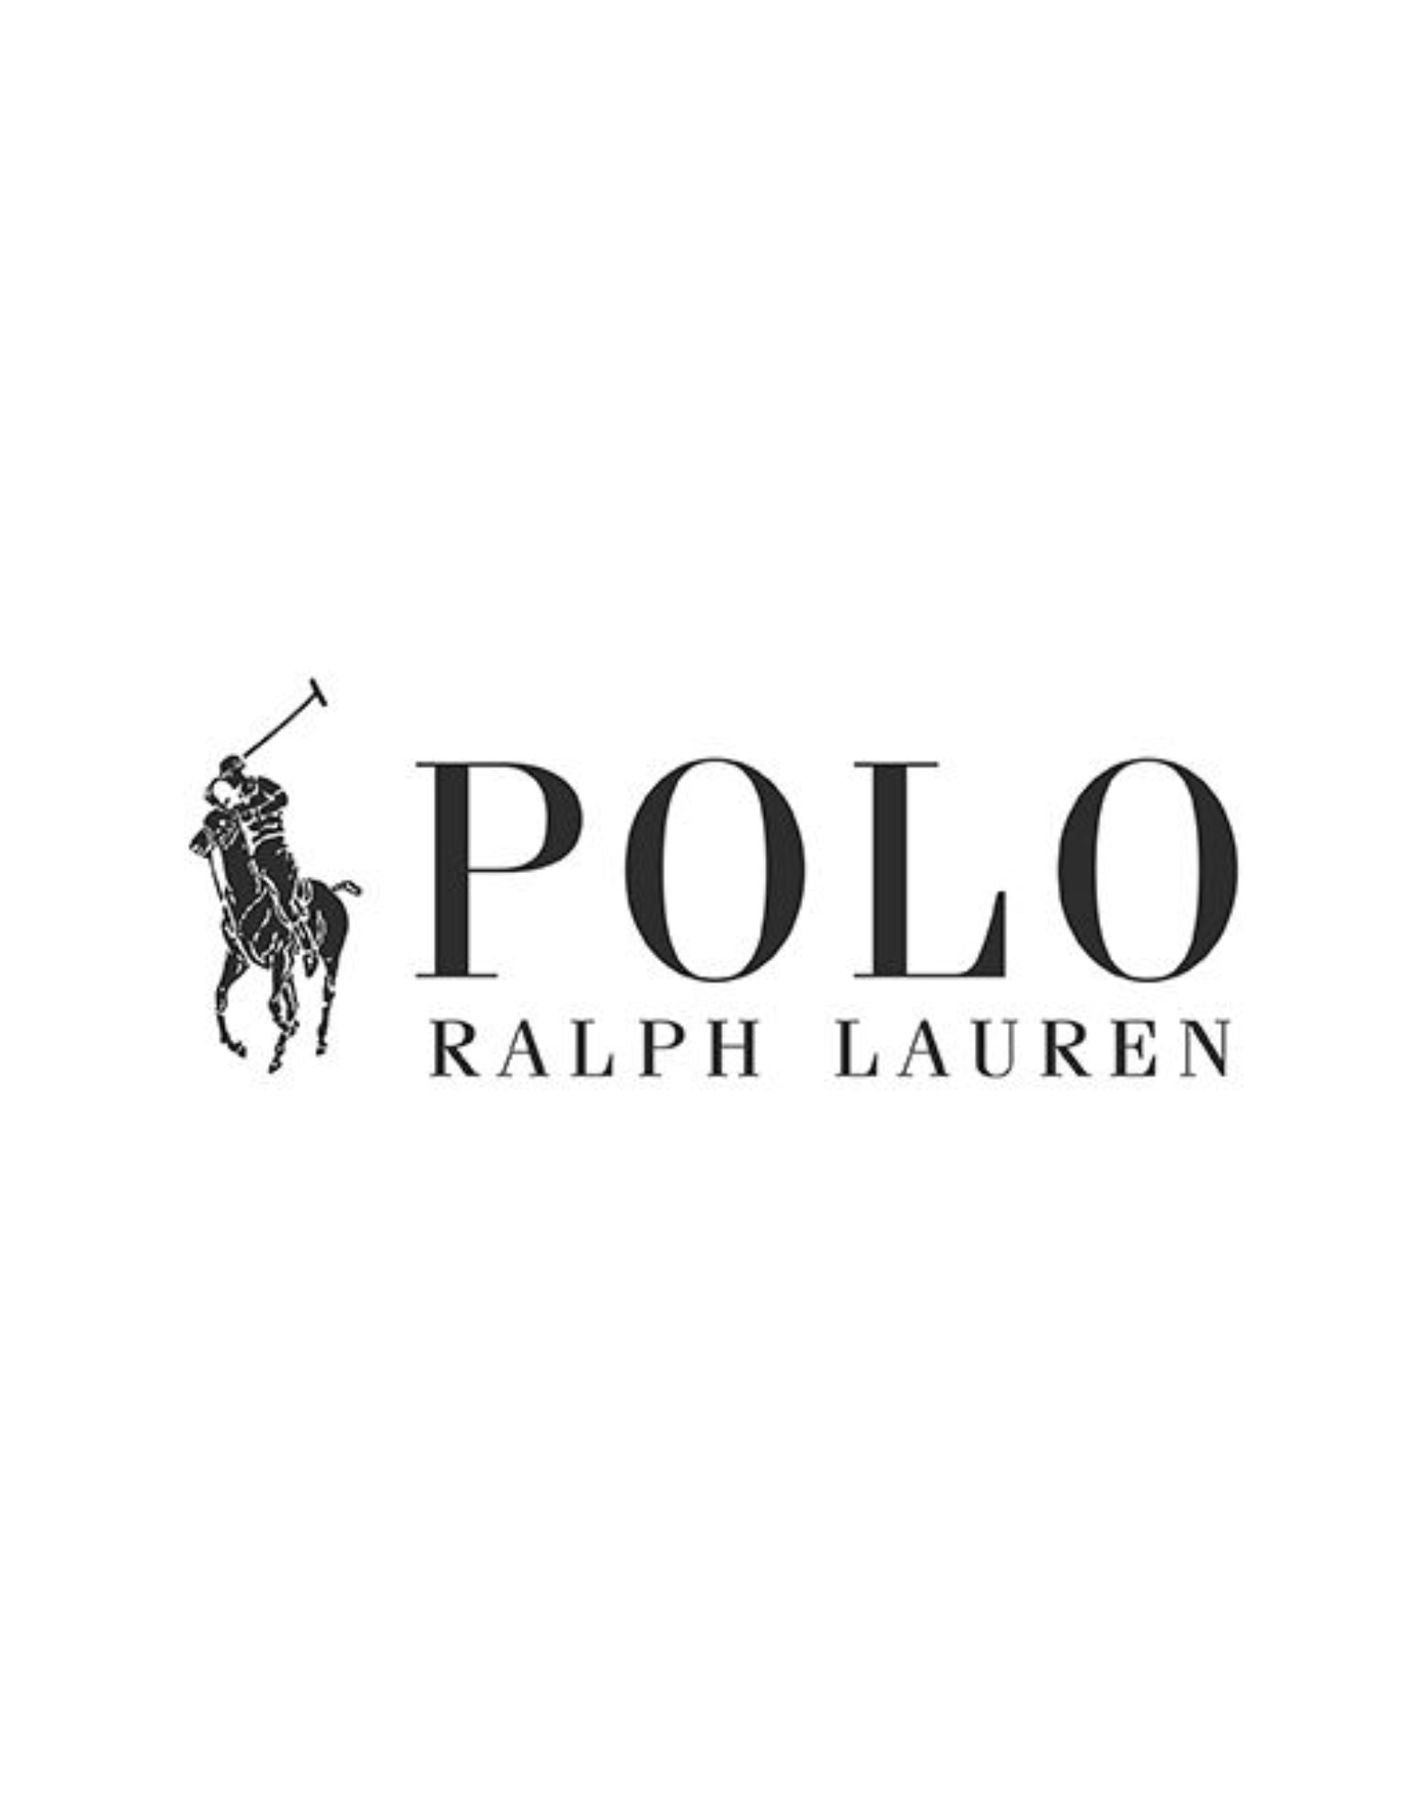 T-shirt homme 714844756004 BLANC Polo Ralph Lauren